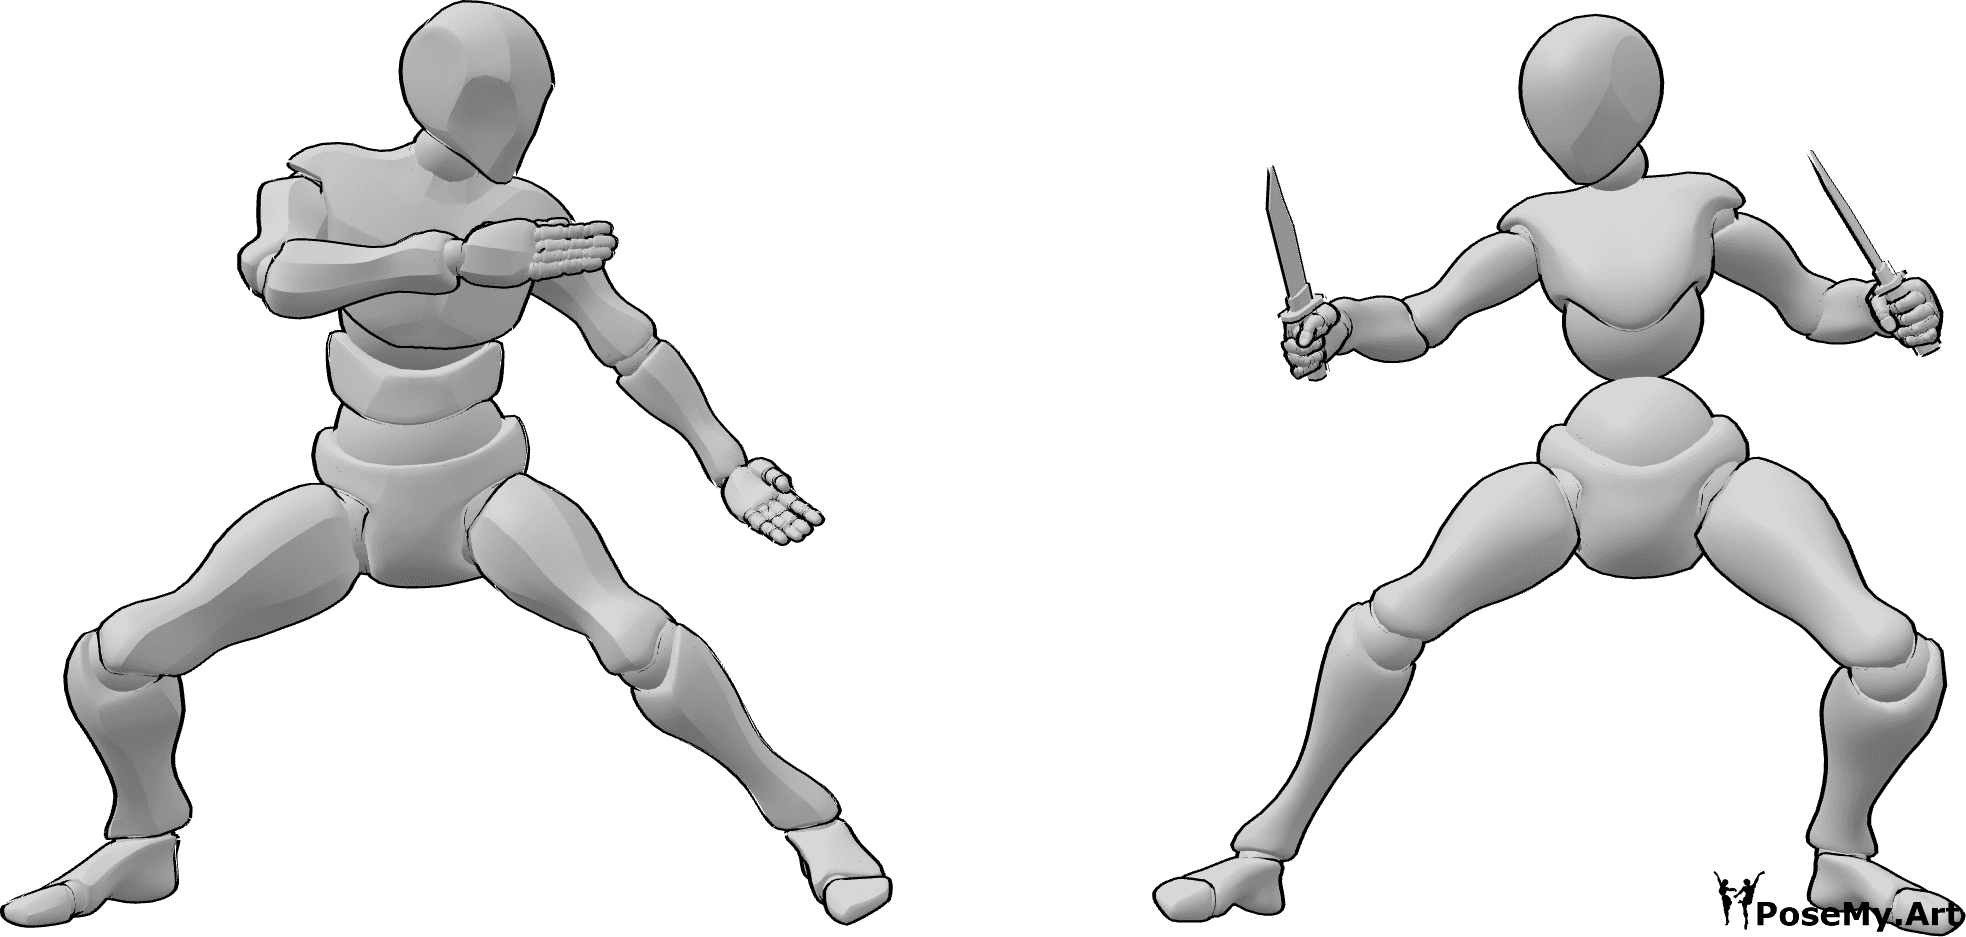 Posen-Referenz- Messer Kampfpose - Eine Frau und ein Mann stehen kurz vor einem Kampf, die Frau hält ein Messer in der Hand